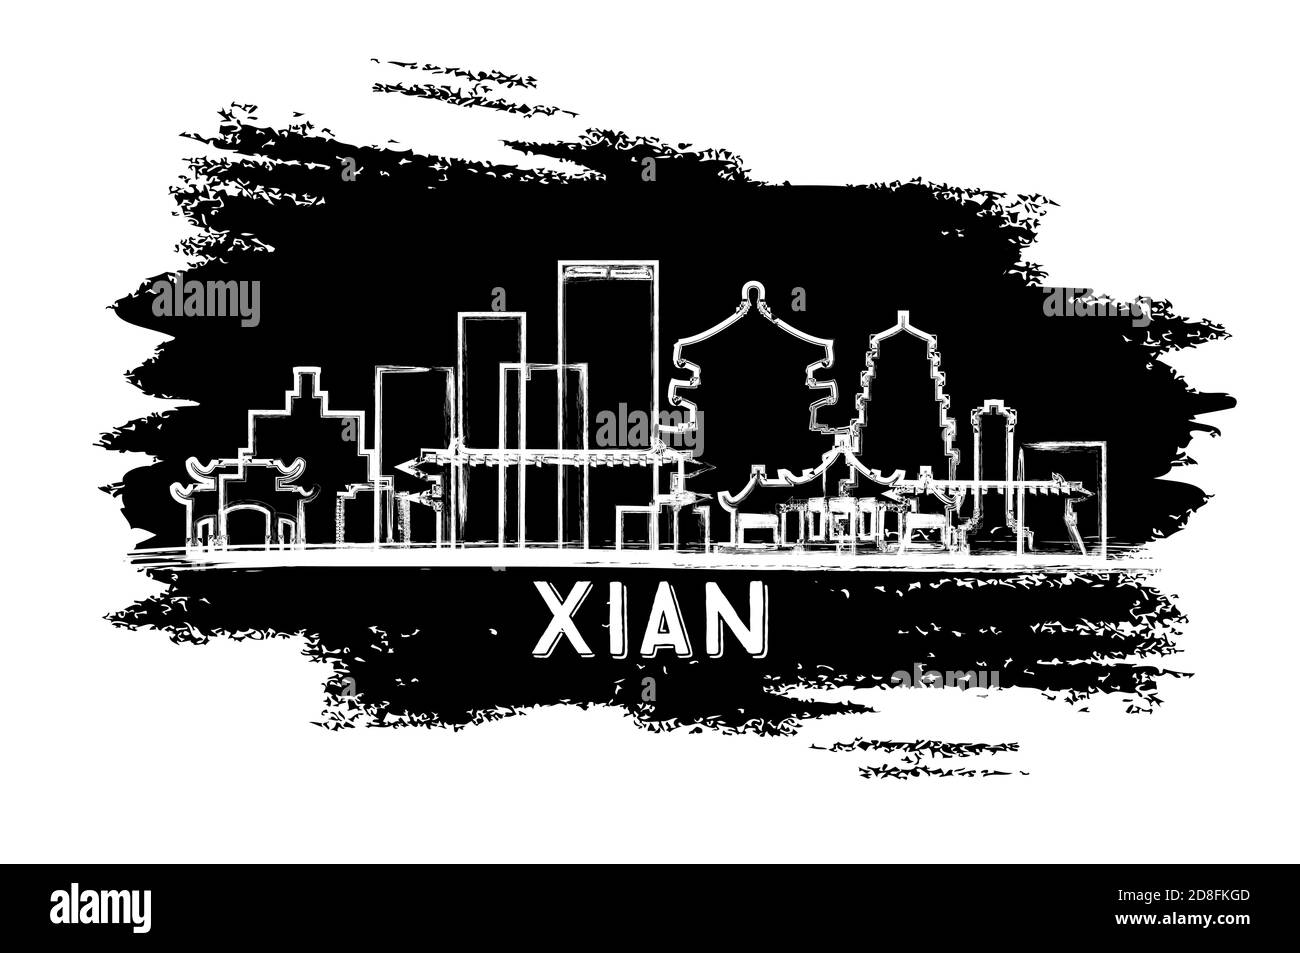 Silhouette de Xian China City. Esquisse dessinée à la main. Concept de voyage d'affaires et de tourisme avec architecture historique. Illustration vectorielle. Illustration de Vecteur